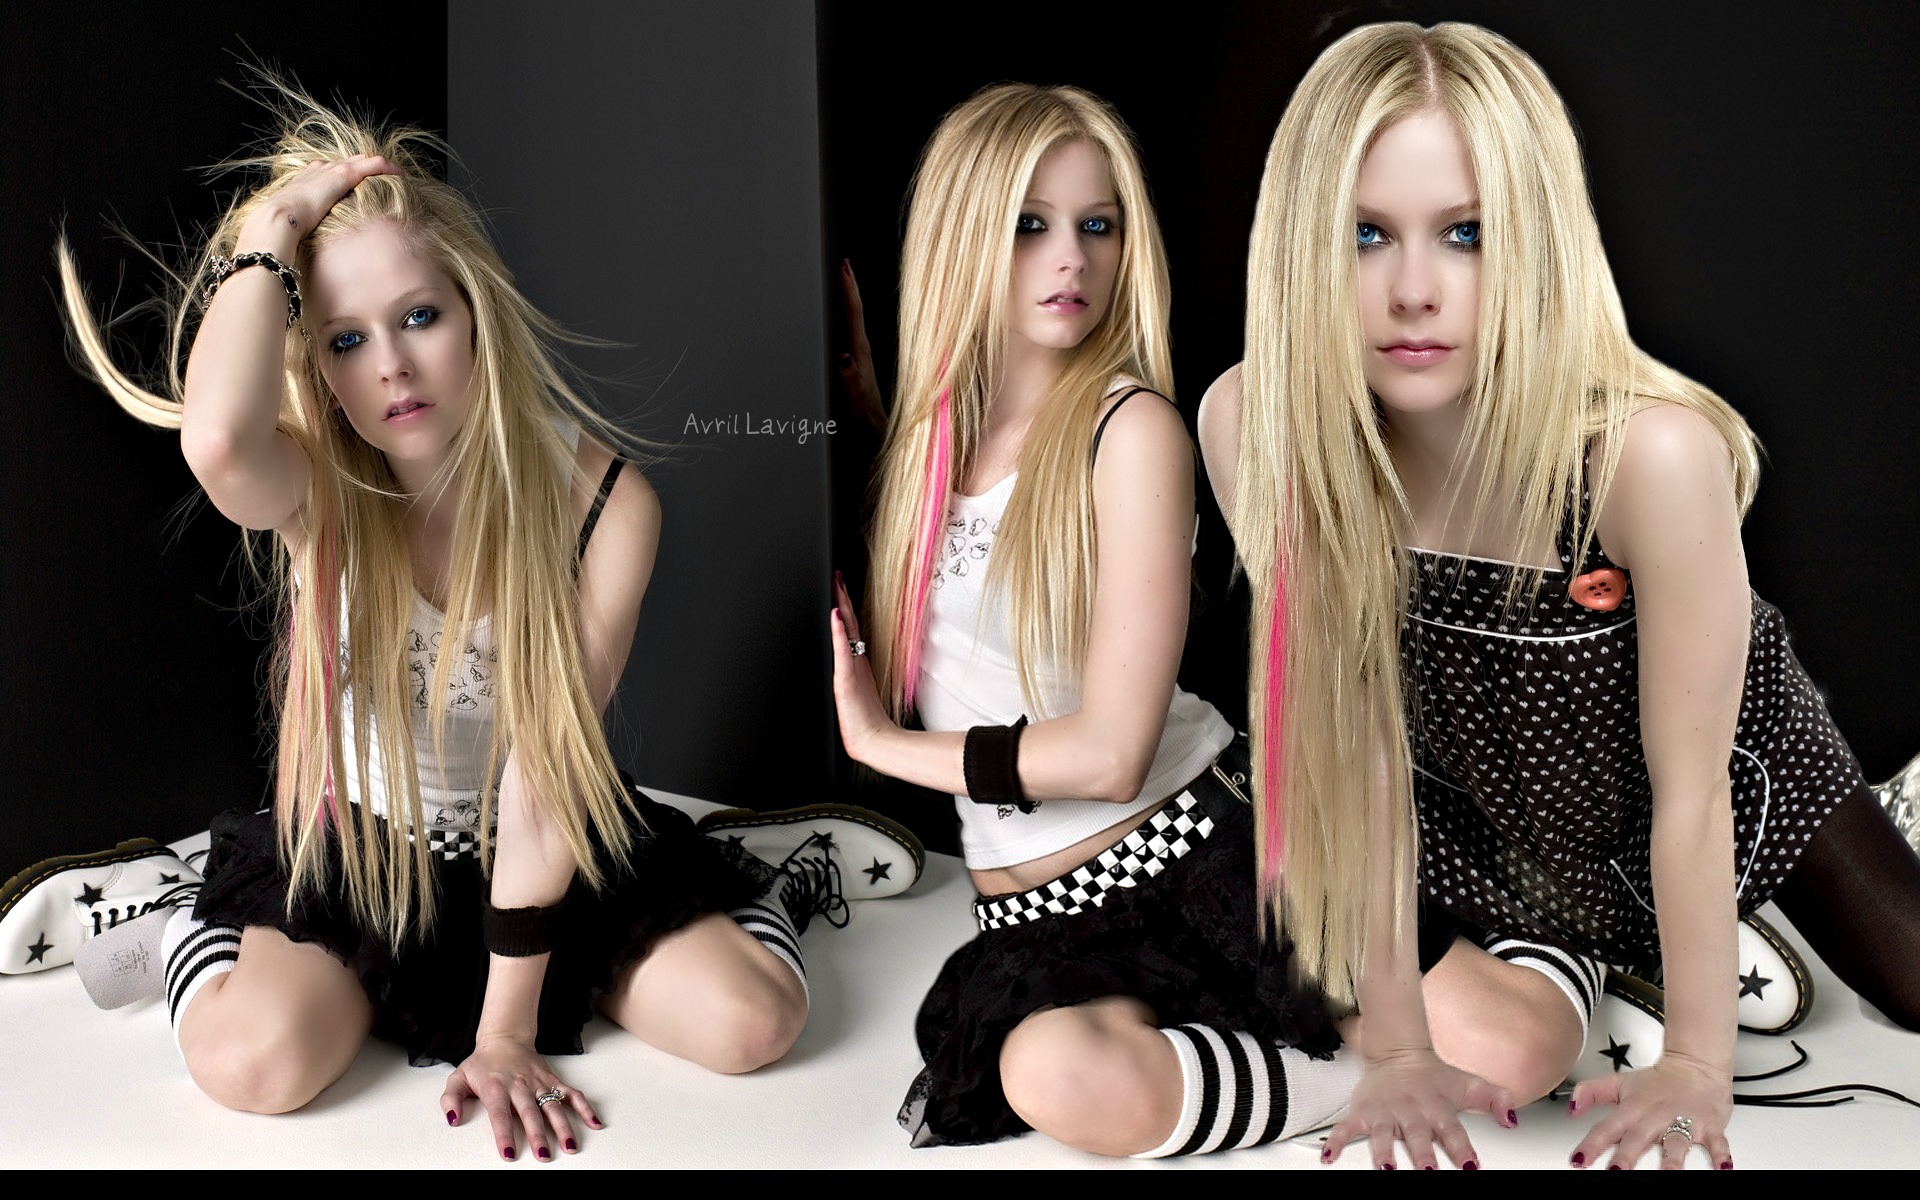 Descarga gratuita de fondo de pantalla para móvil de Música, Avril Lavigne, Cantante.